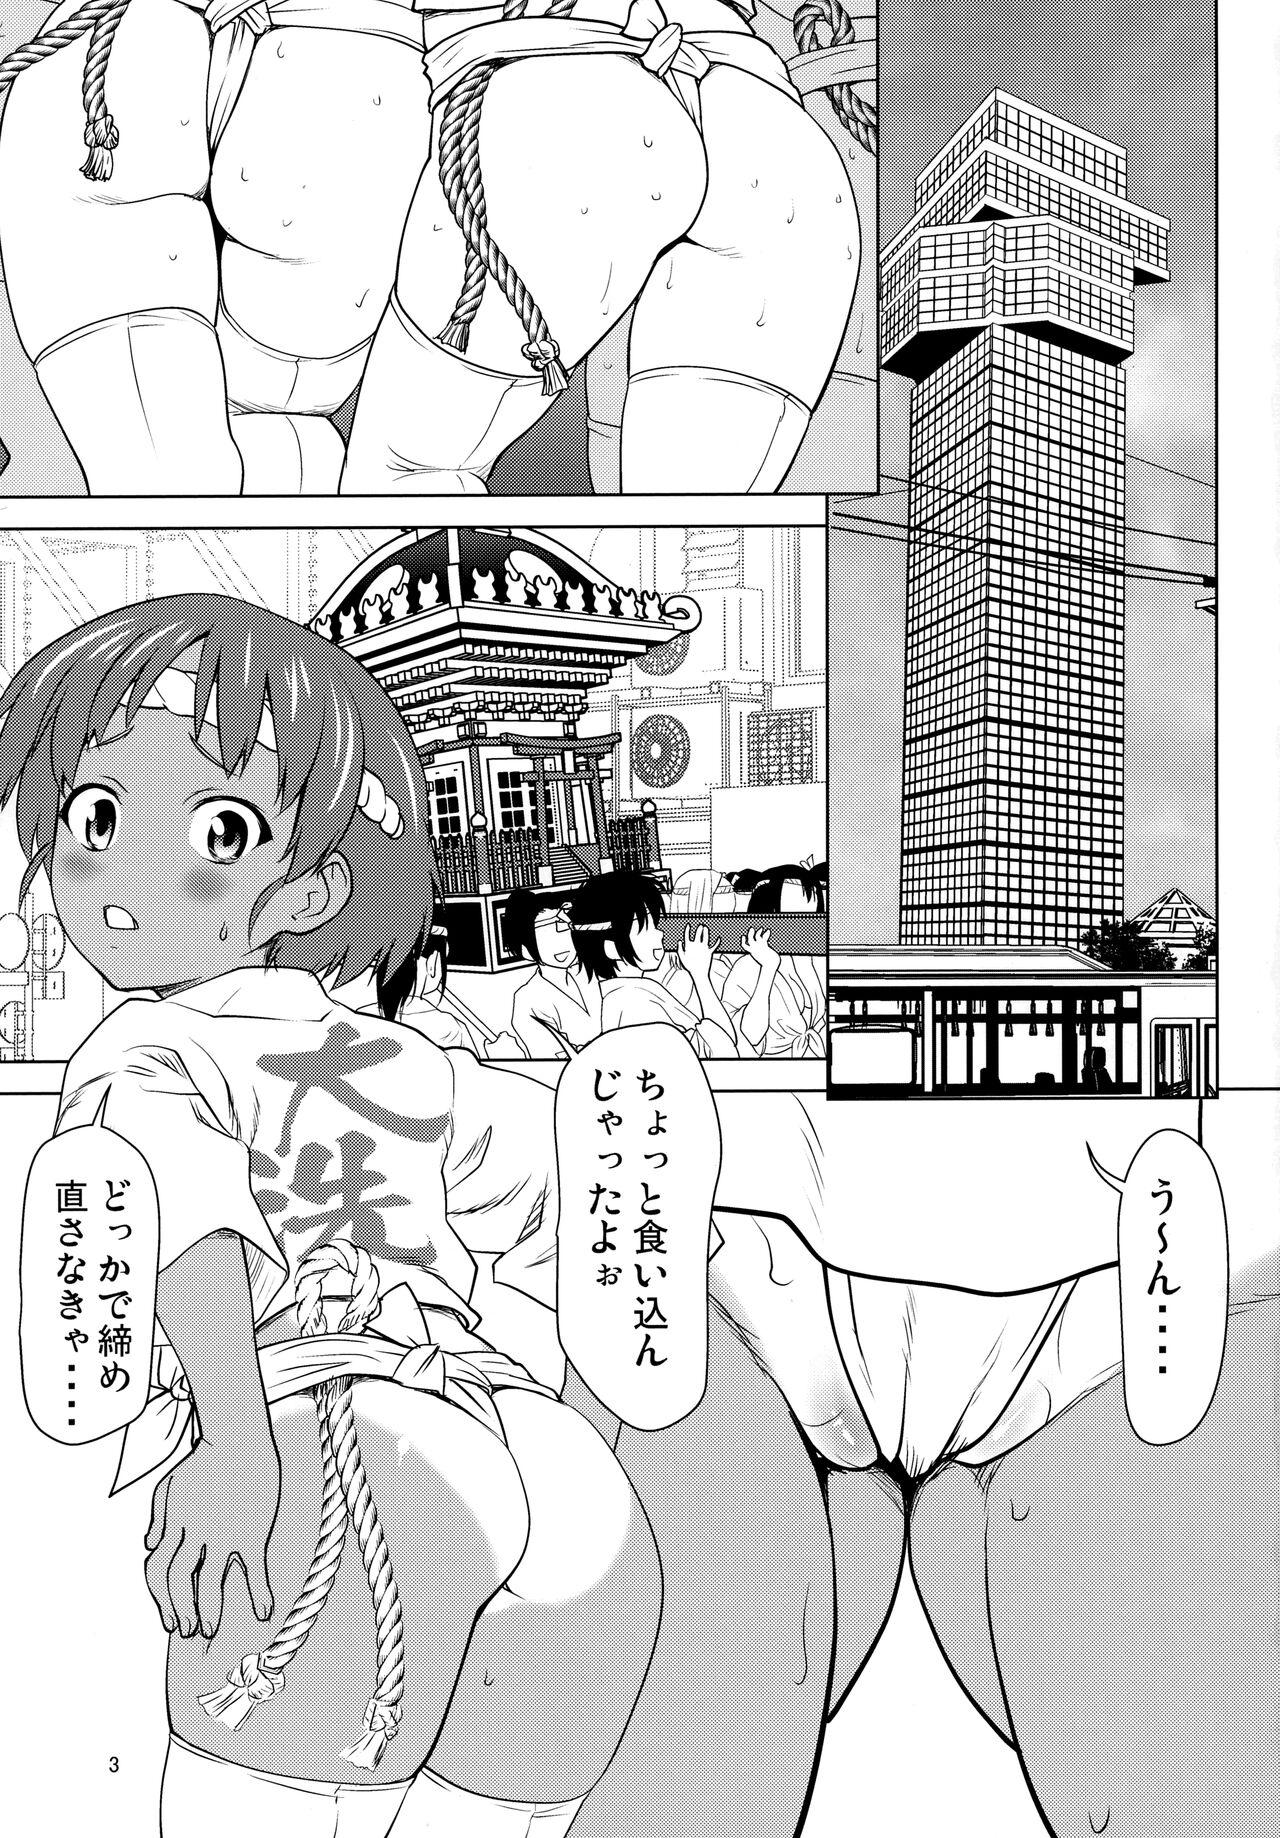 Perfect Butt Hiyake Fundoshi no Karina-chan to Monokage de…. - Girls und panzer Bang Bros - Picture 2